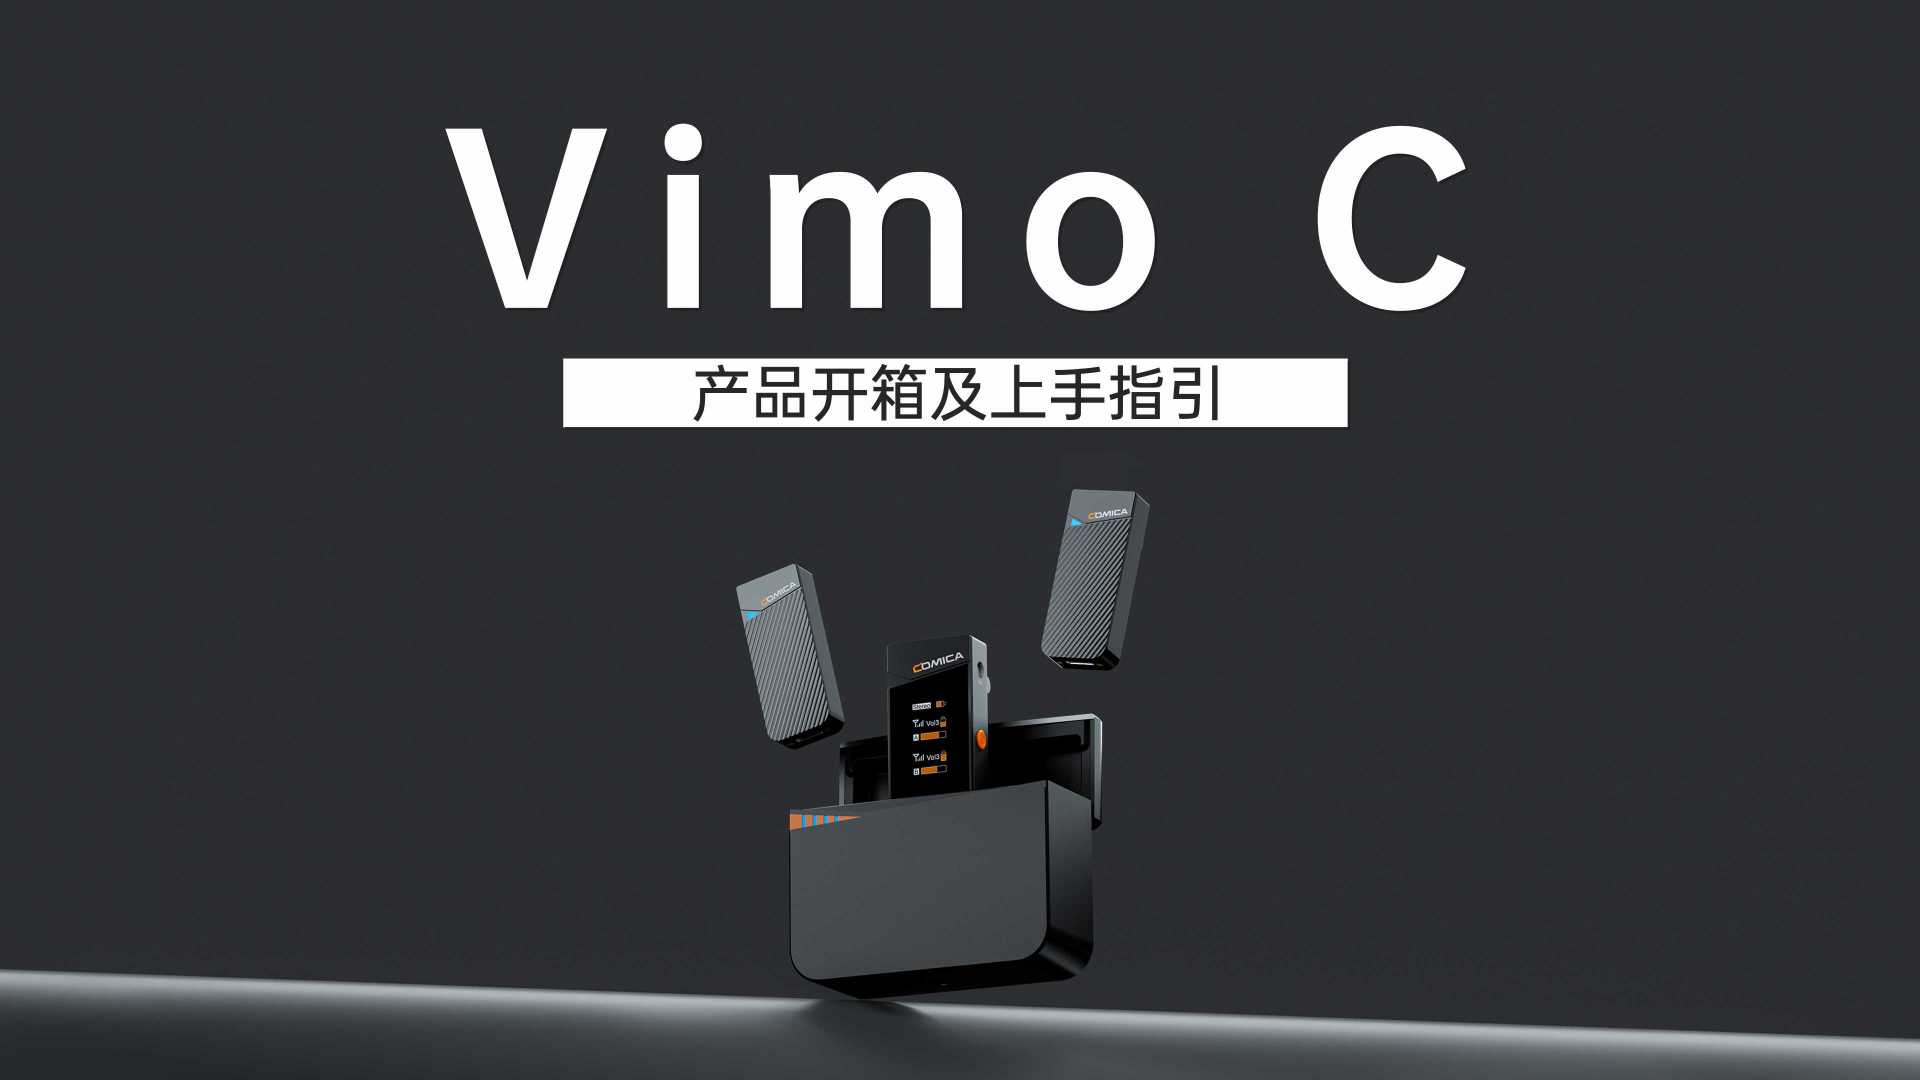 【科唛Vimo C】产品开箱及上手指引